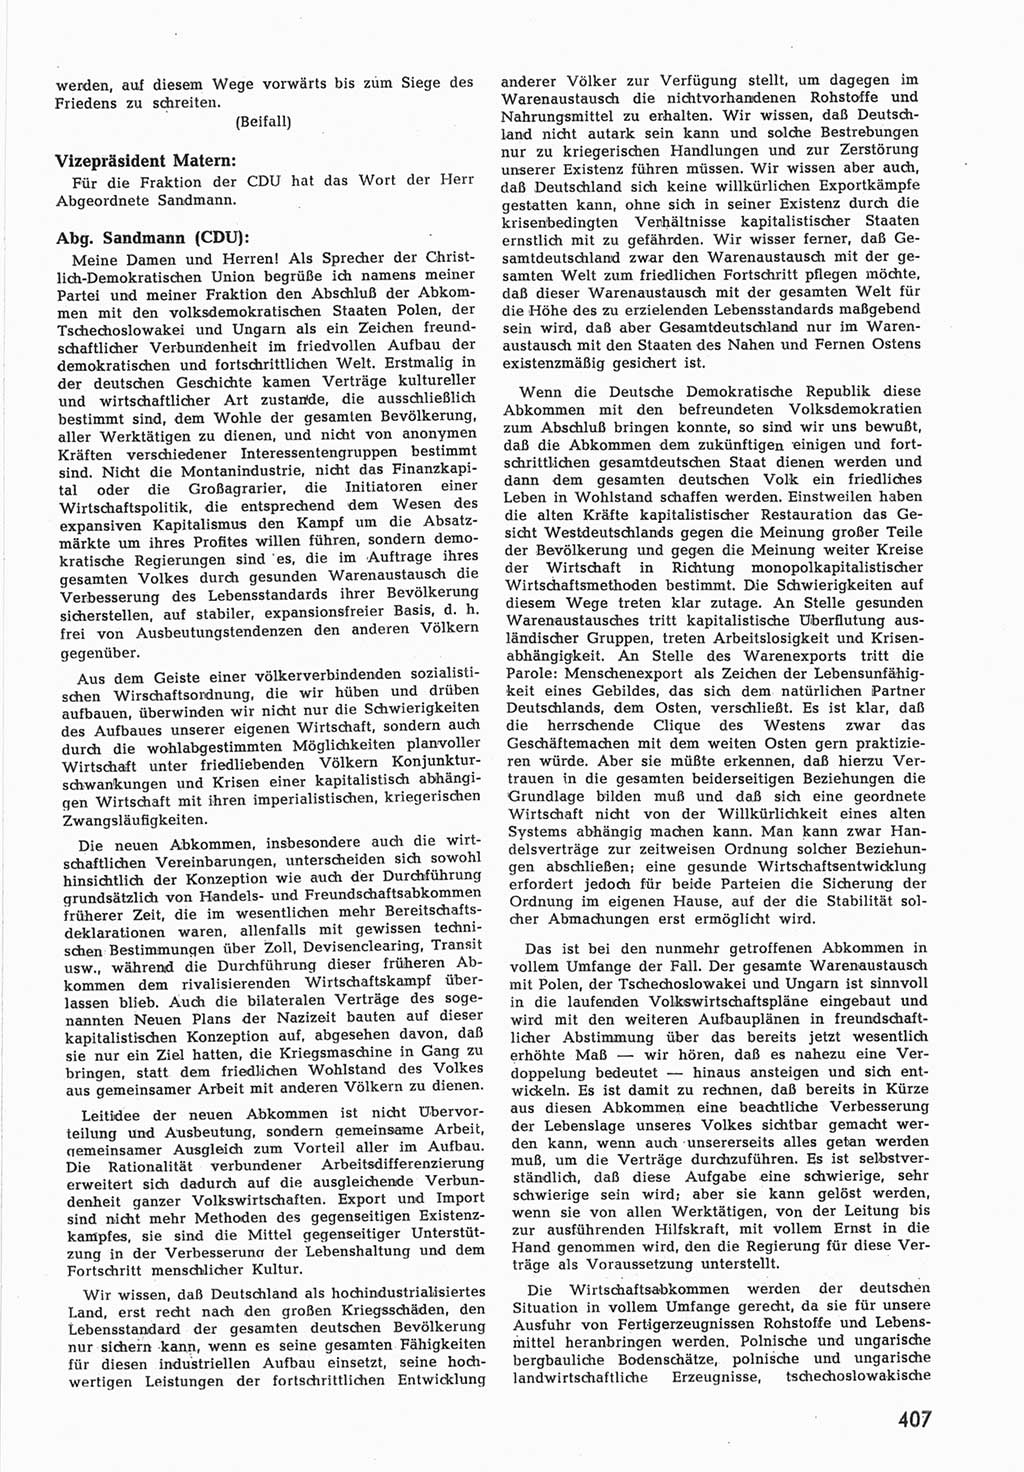 Provisorische Volkskammer (VK) der Deutschen Demokratischen Republik (DDR) 1949-1950, Dokument 425 (Prov. VK DDR 1949-1950, Dok. 425)